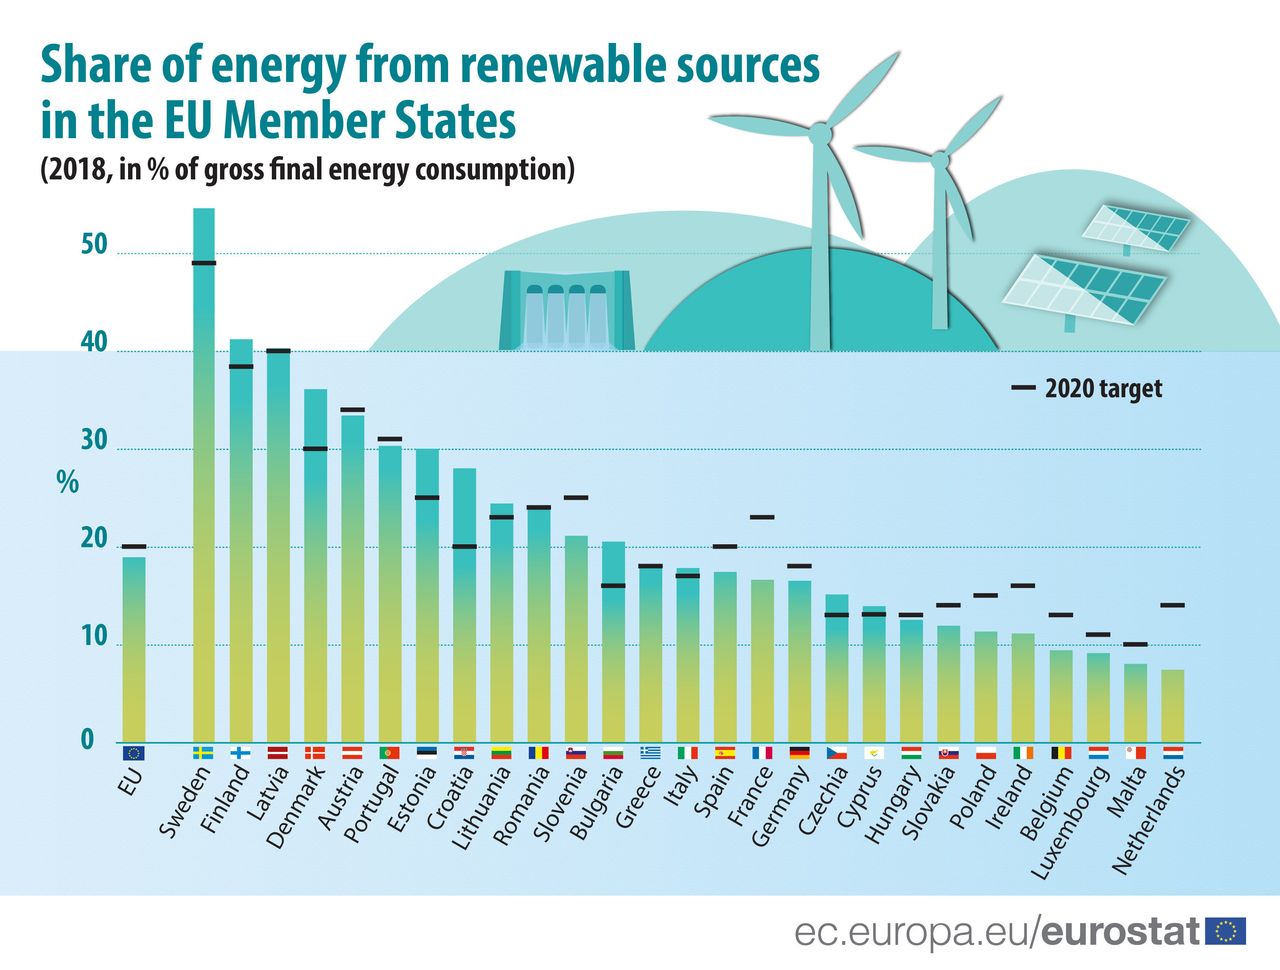  Εικ. 5: Μερίδιο ενέργειας από AΠE (% επί της μικτής τελικής κατανάλωσης ενέργειας) στις χώρες-μέλη της ΕΕ, το 2018. Πηγή: Eurostat (nrg_ind_ren).